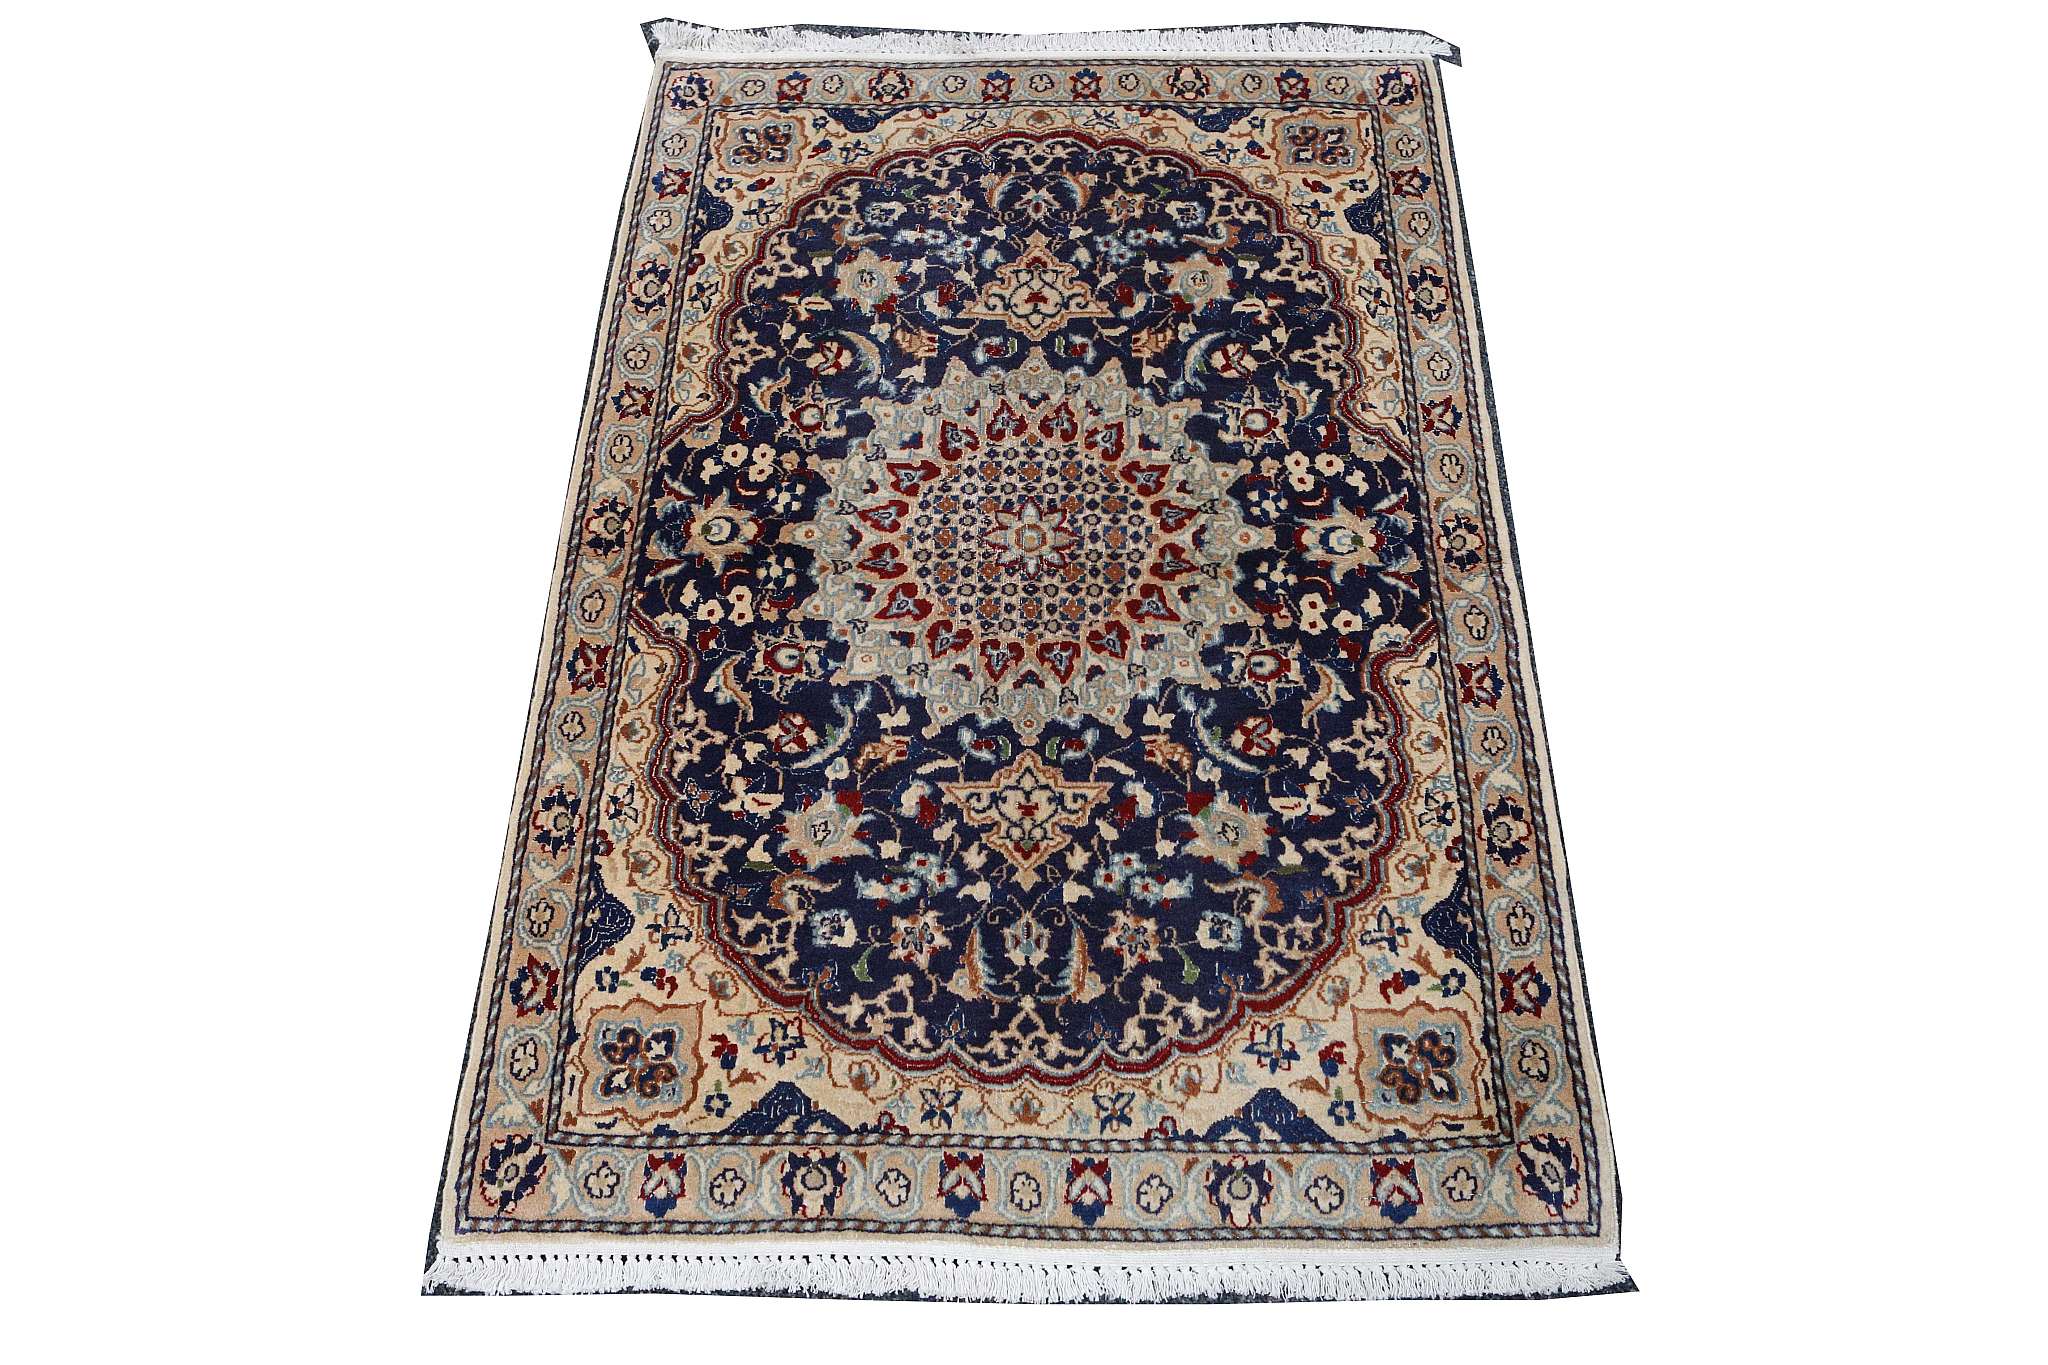 Persian wool and silk Nain rug, 1.25m x 0.85m, con